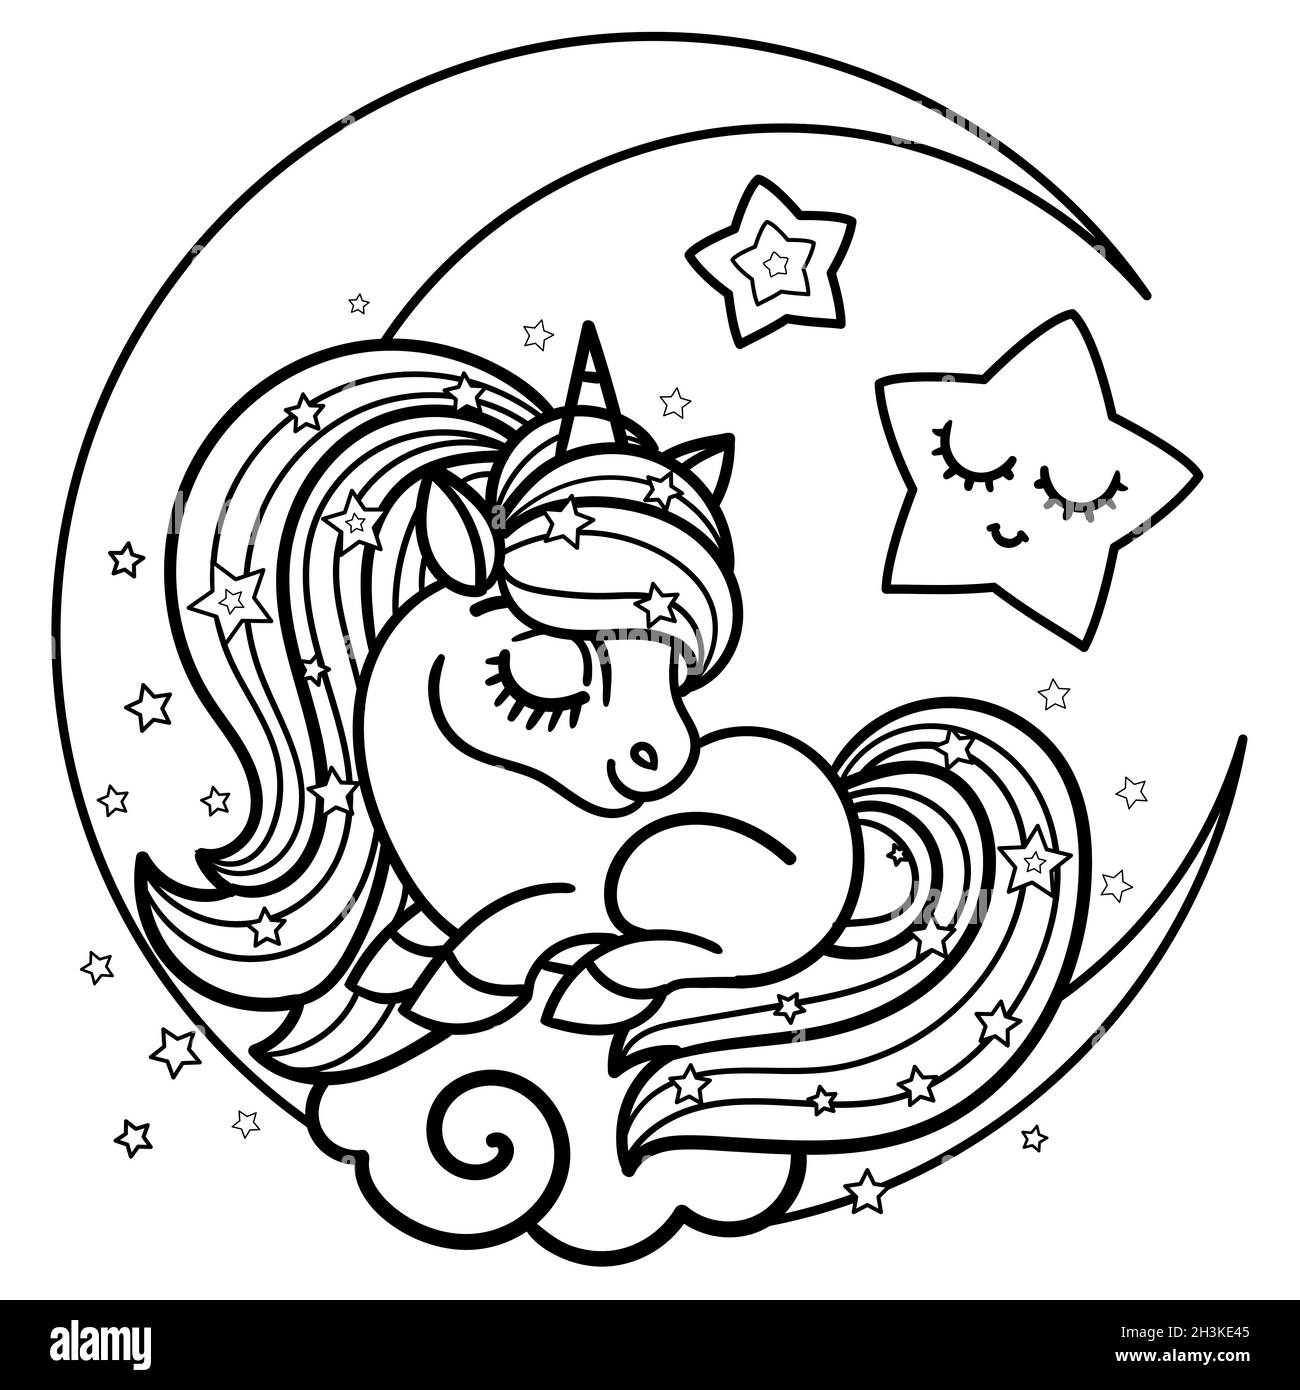 Petite jolie licorne endormie sur le croissant de lune.Dessin linéaire noir et blanc.Vecteur. Illustration de Vecteur